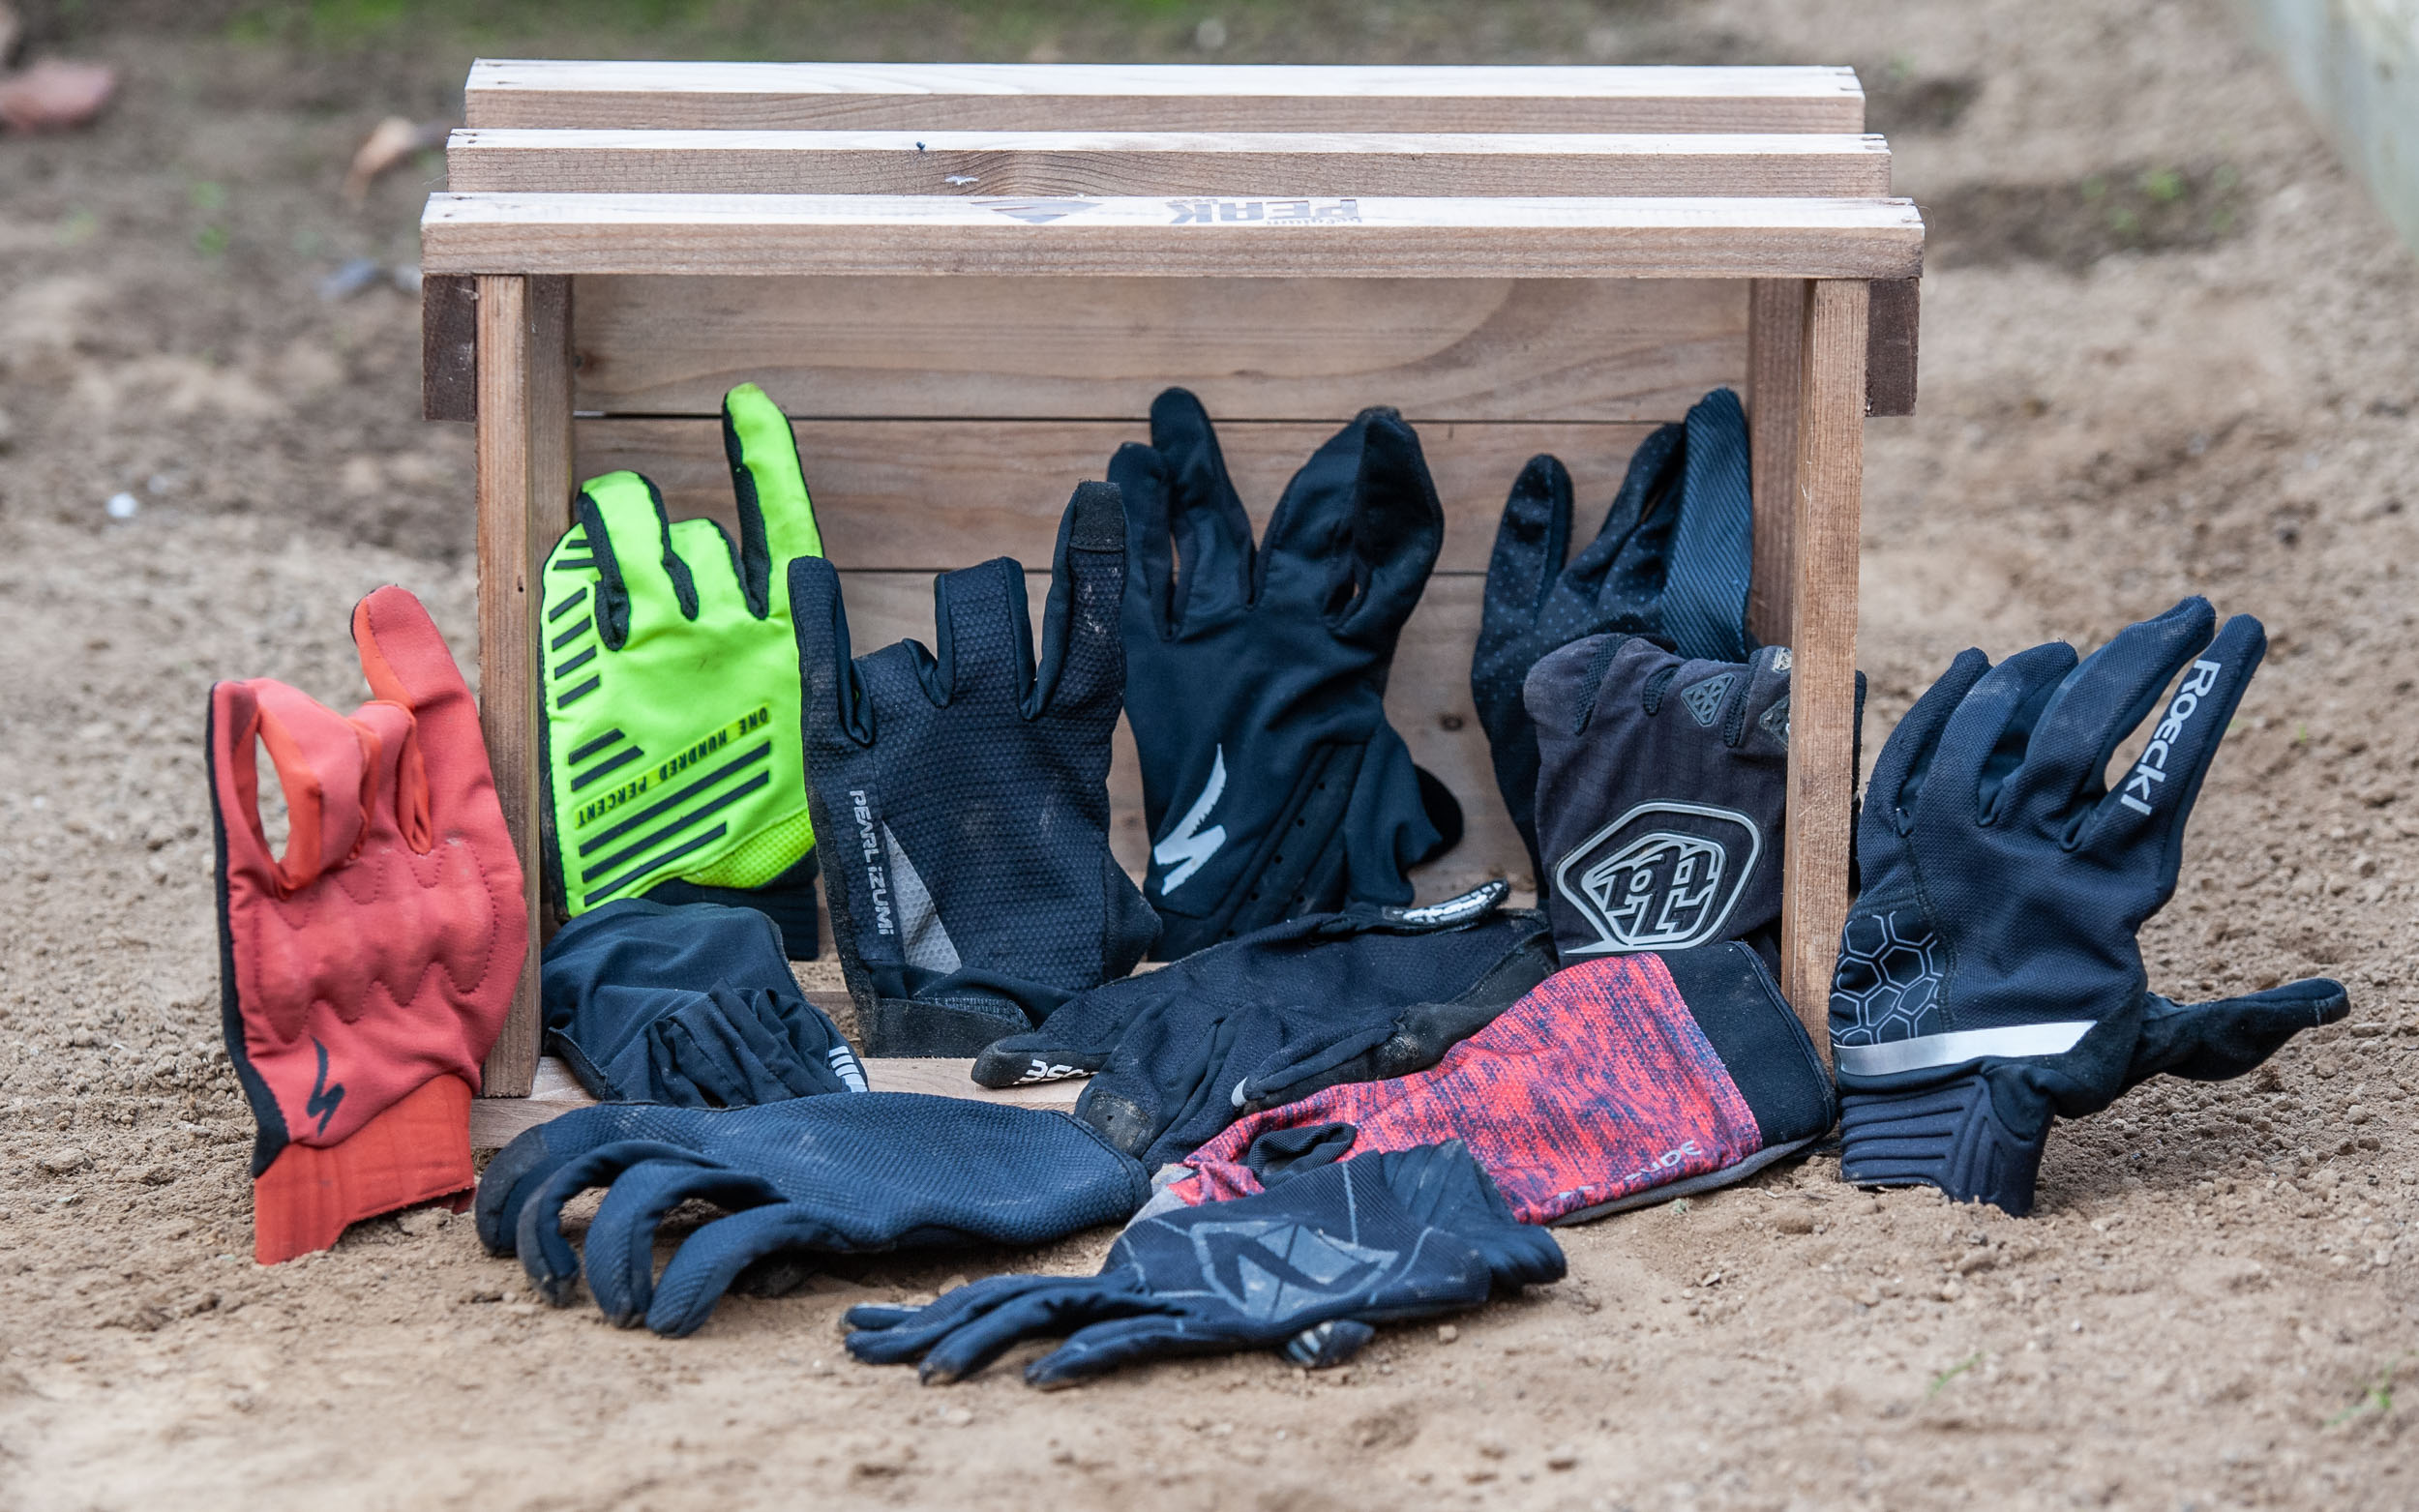 Dossier dozijn XC/trail-handschoenen lange vingers getest - Vojo Magazine